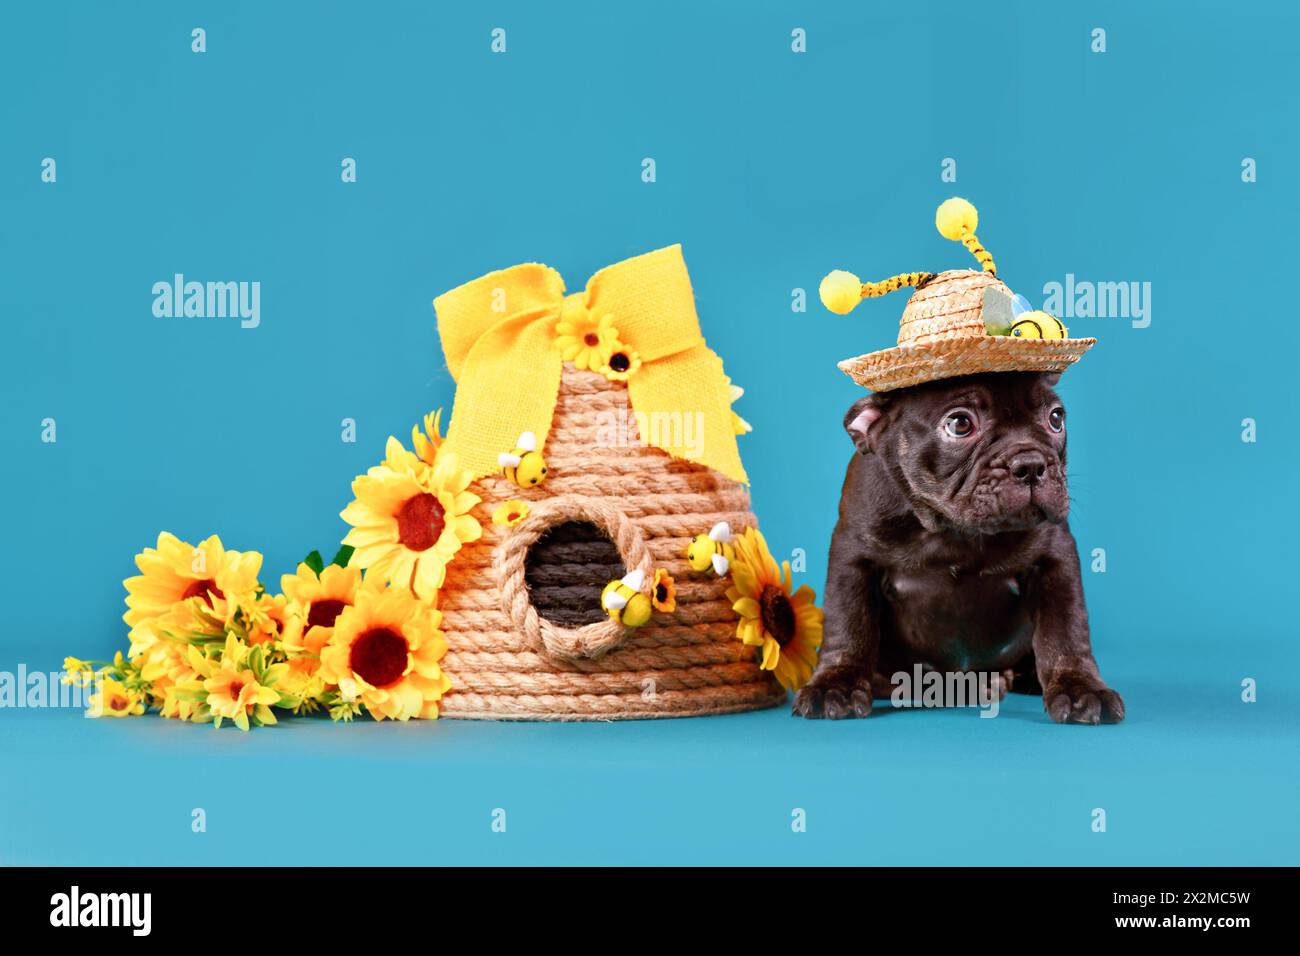 Cucciolo di cane Bulldog francese nero con cappello di paglia e corna in costume di api seduto accanto all'alveare e girasoli su sfondo blu Foto Stock